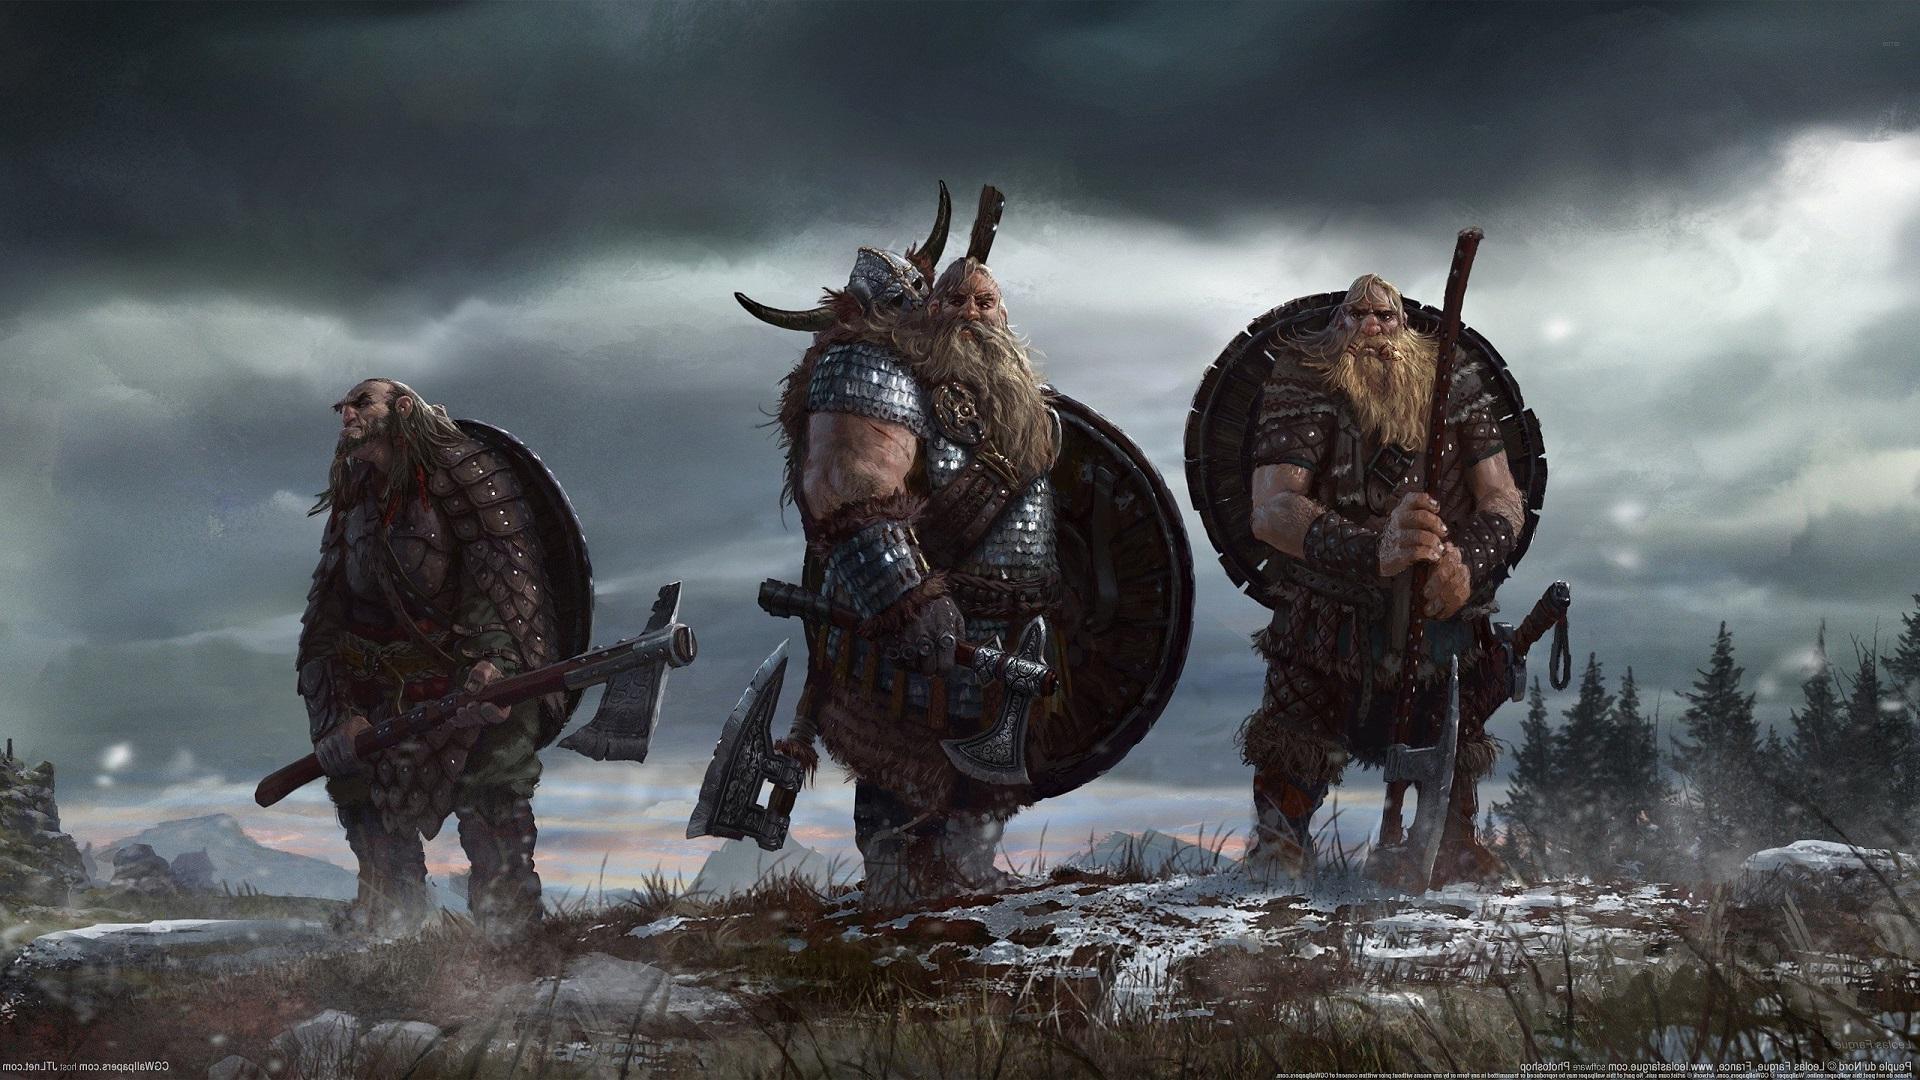 fond d'écran vikings,oeuvre de cg,capture d'écran,jeux,personnage fictif,viking